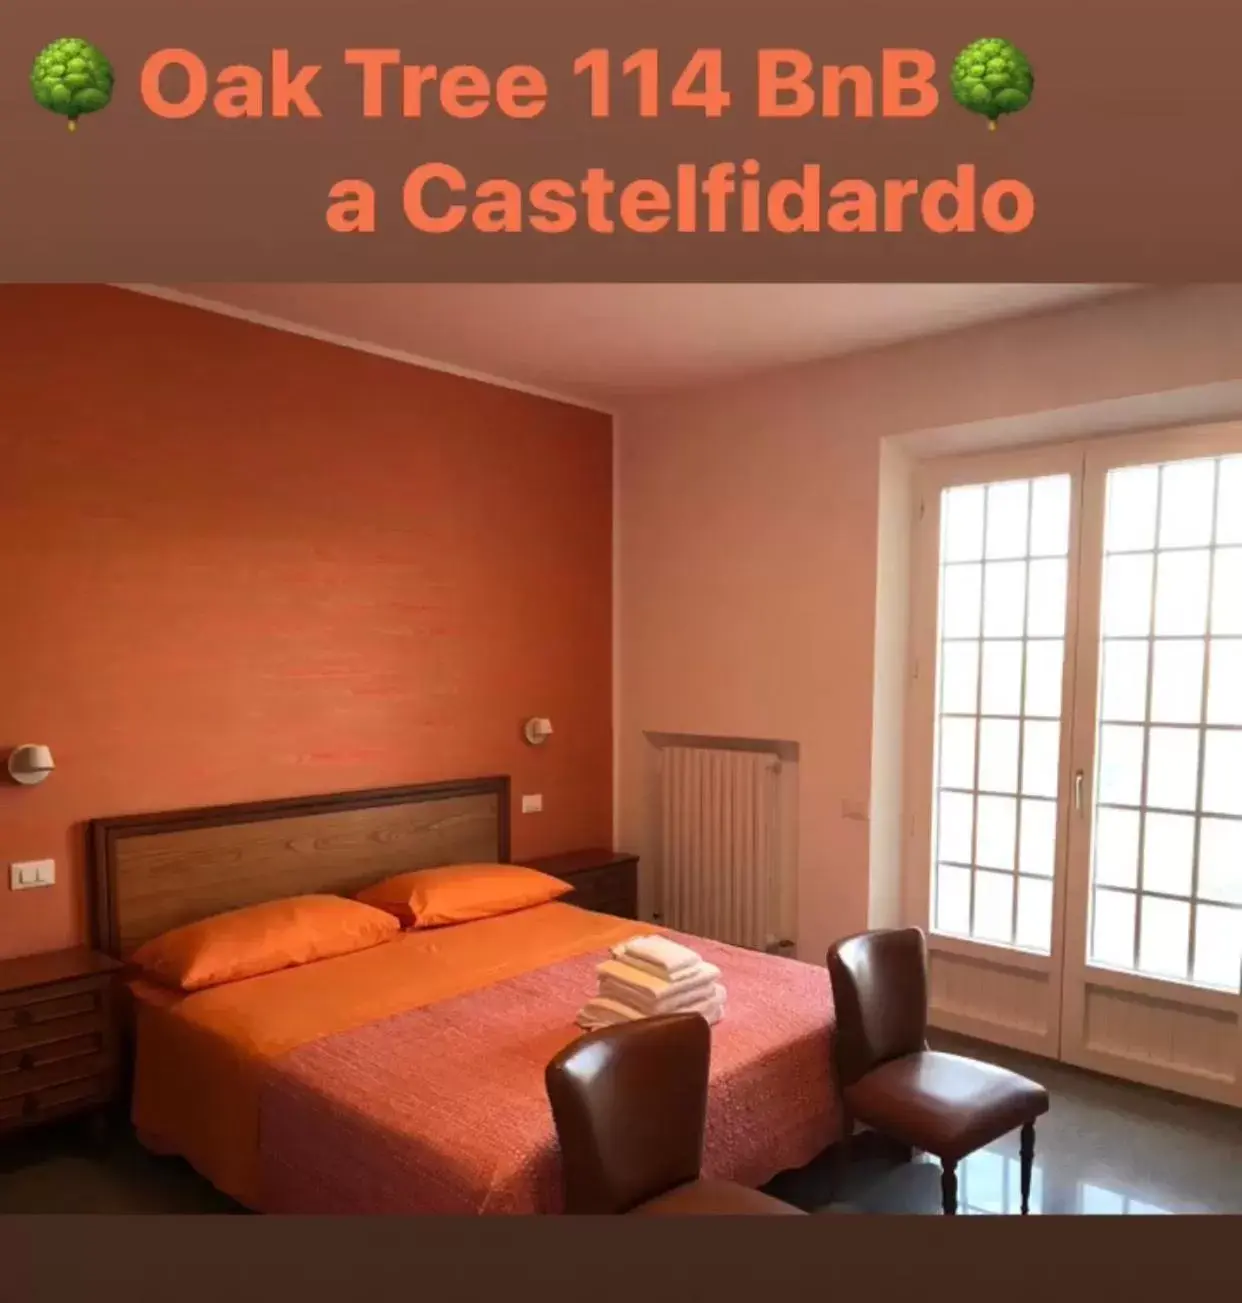 Bedroom, Bed in OAK TREE 114 BnB